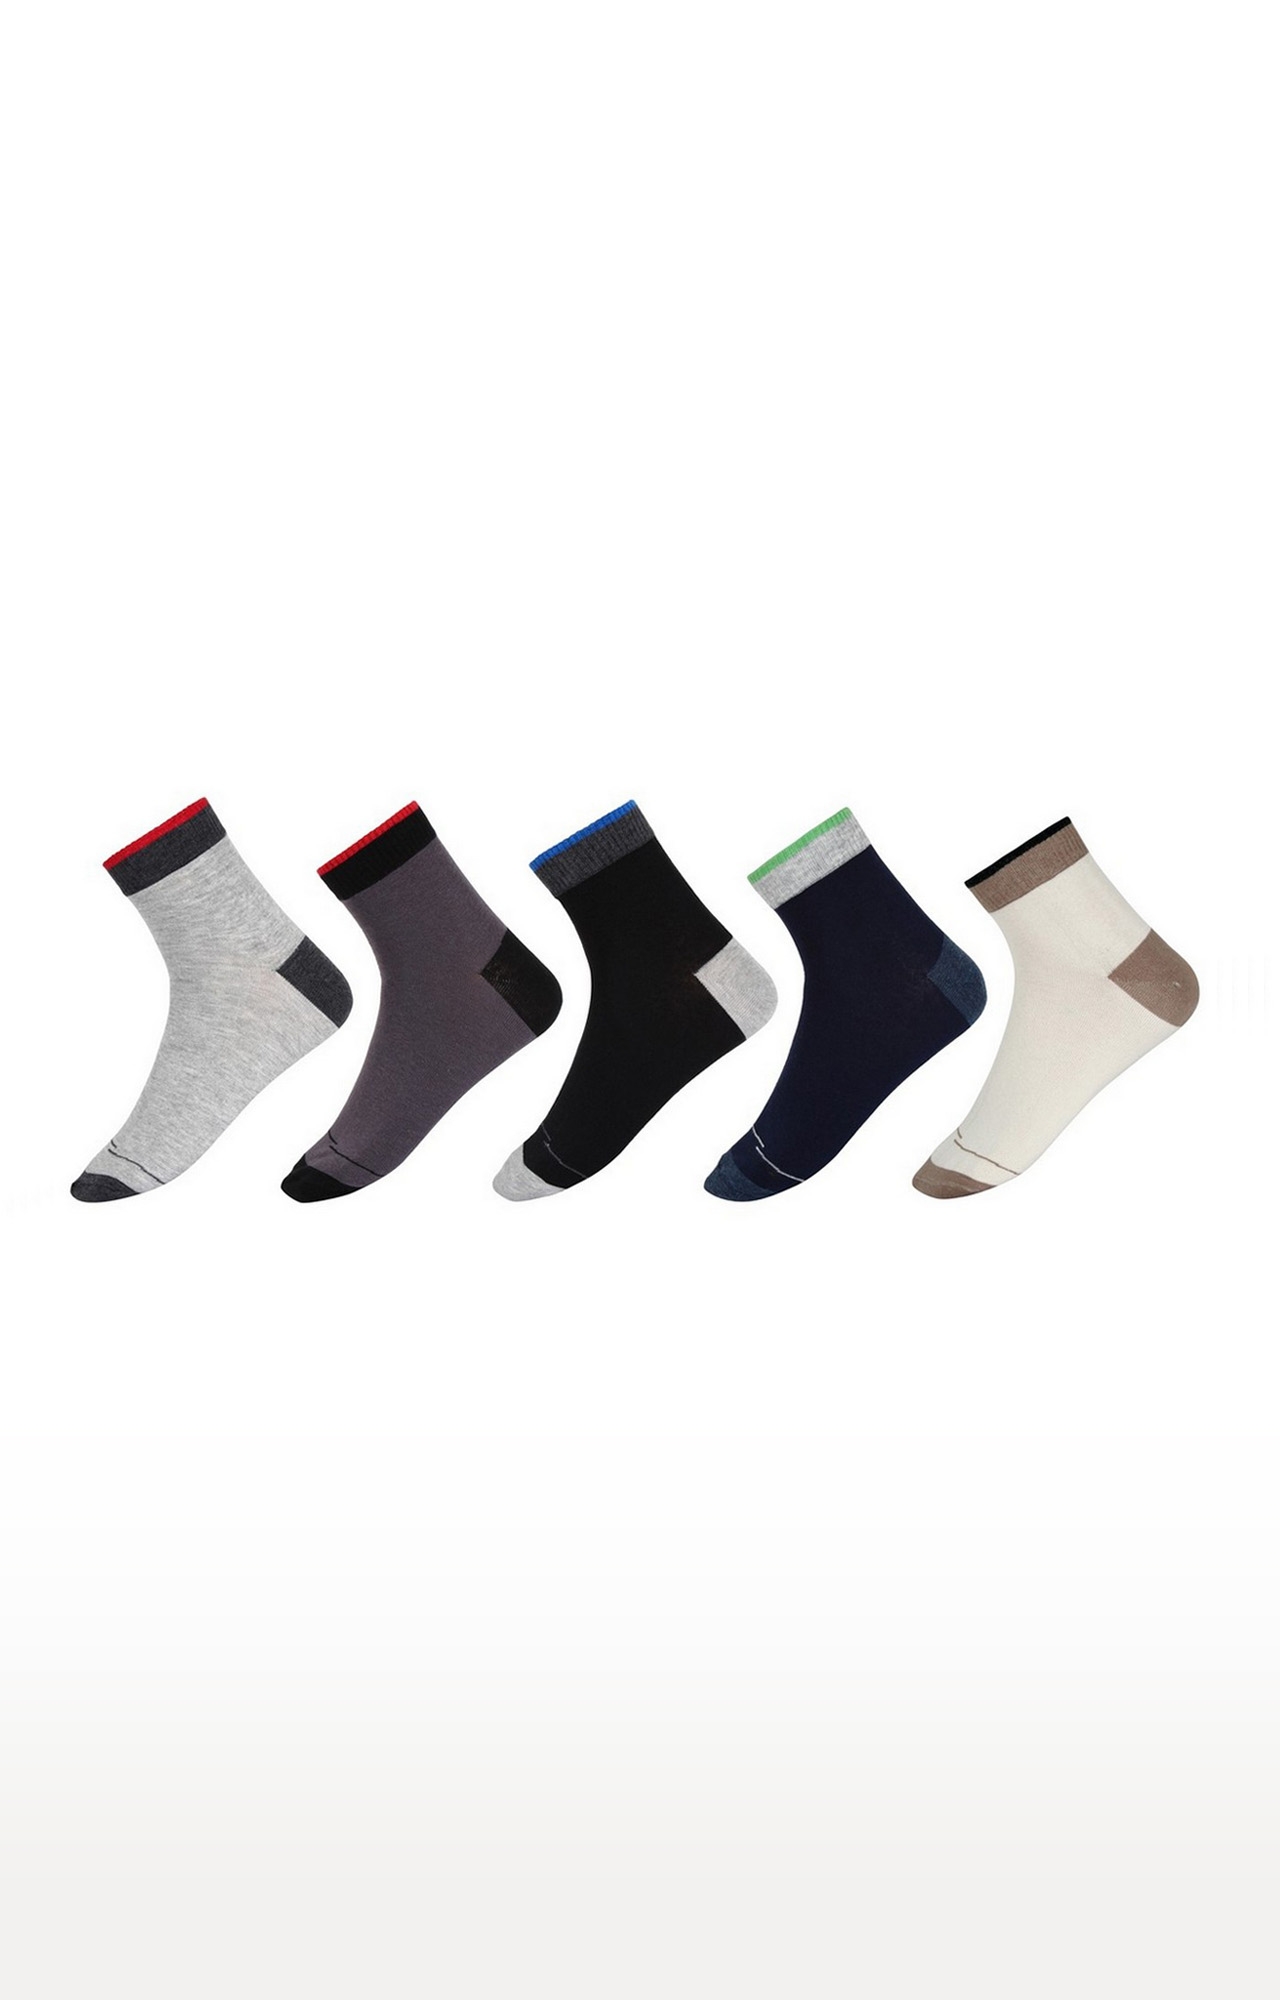 SIDEWOK | Multicolour Socks - Pack of 5